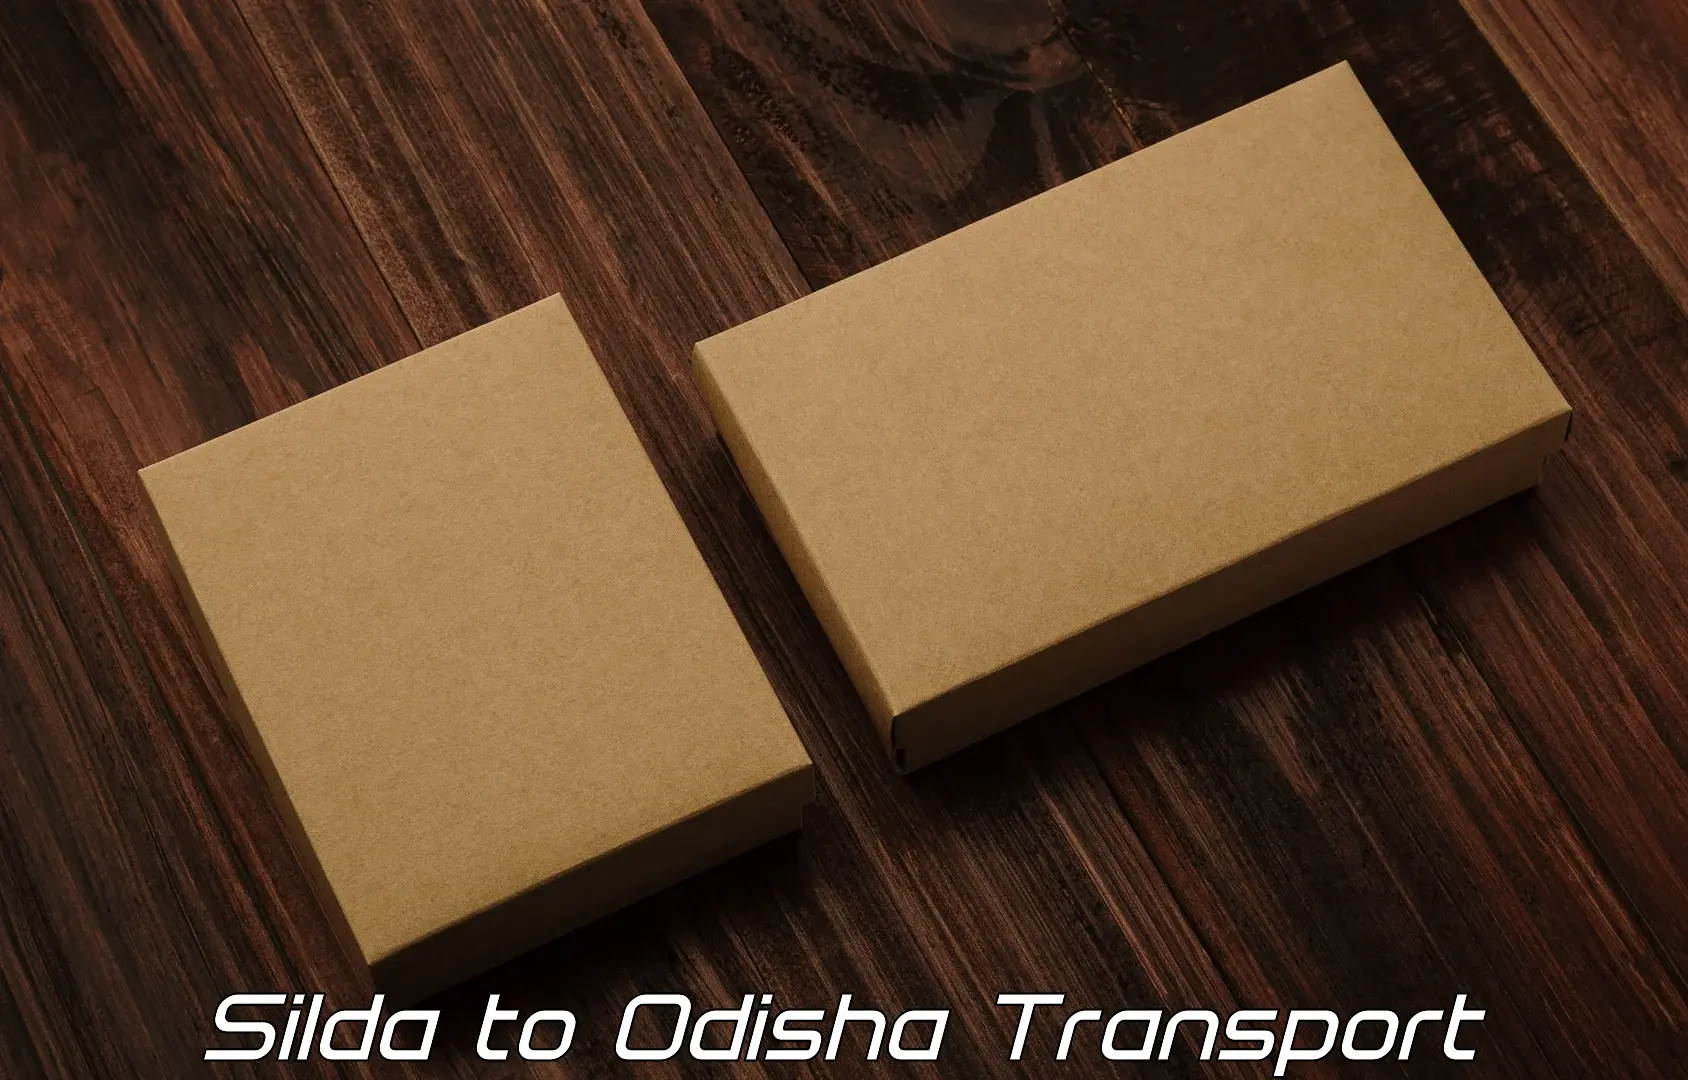 Container transport service Silda to Kamakhyanagar